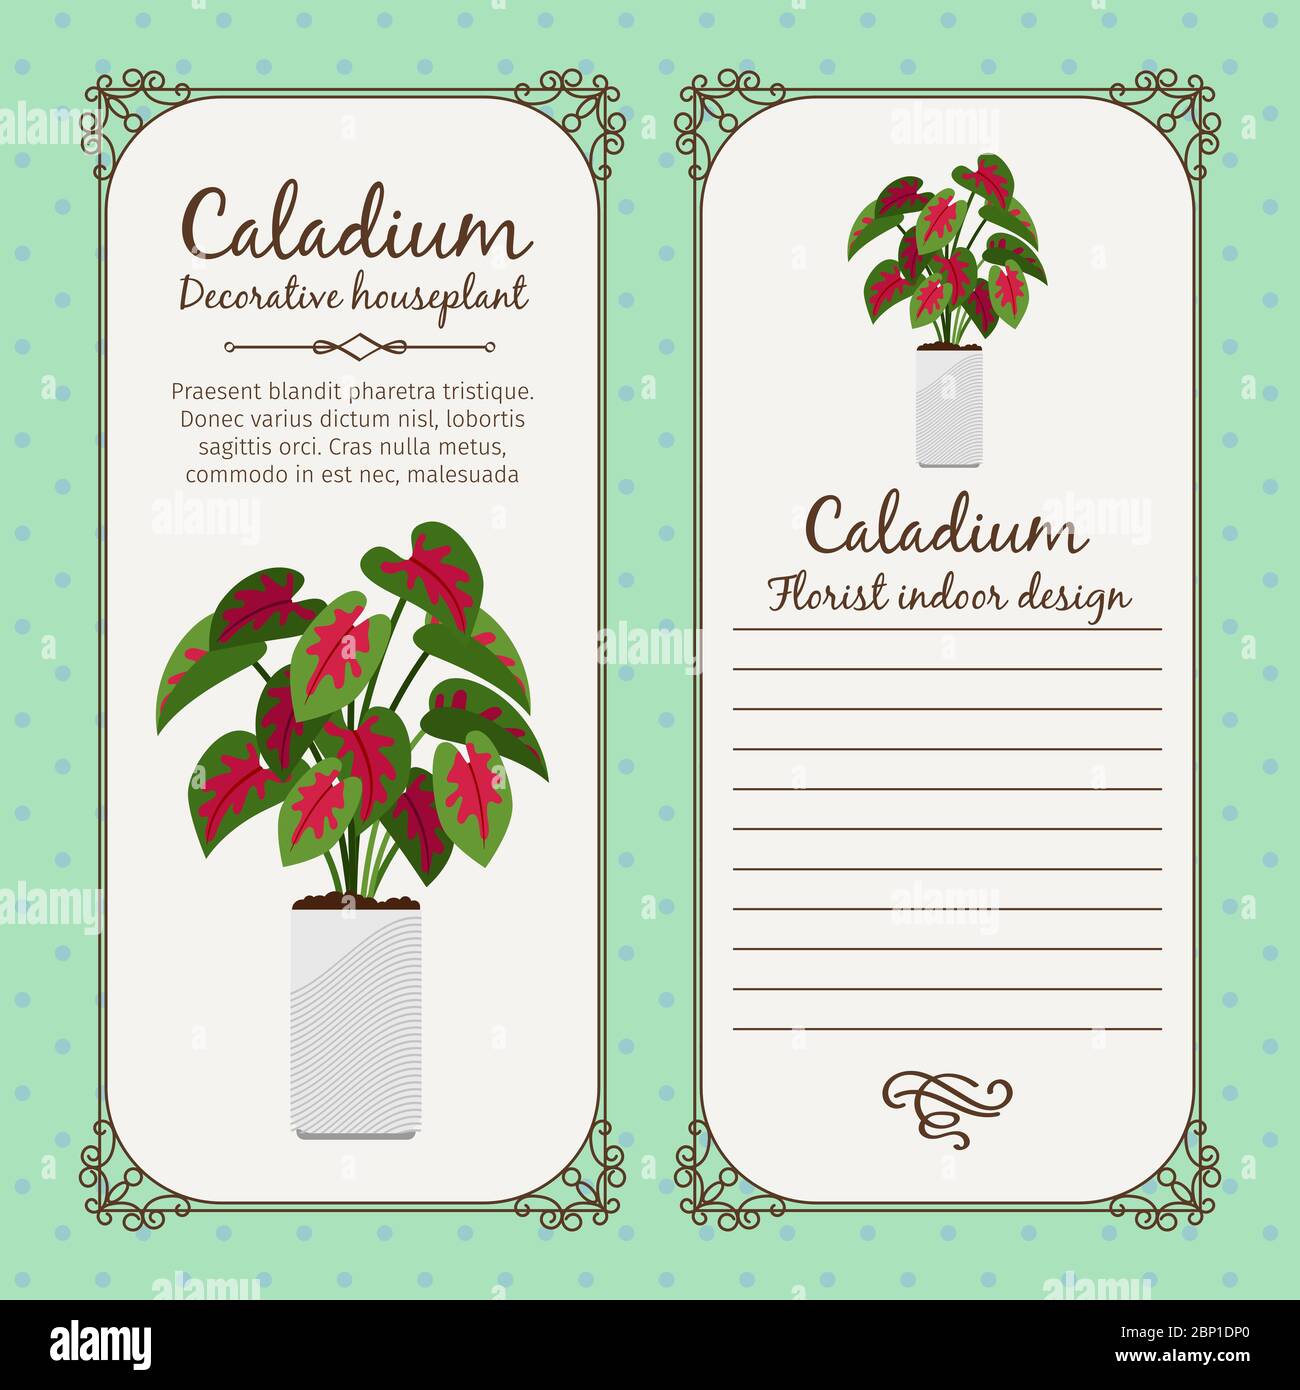 Modèle d'étiquette vintage avec plante décorative au caladium en pot, illustration vectorielle Illustration de Vecteur